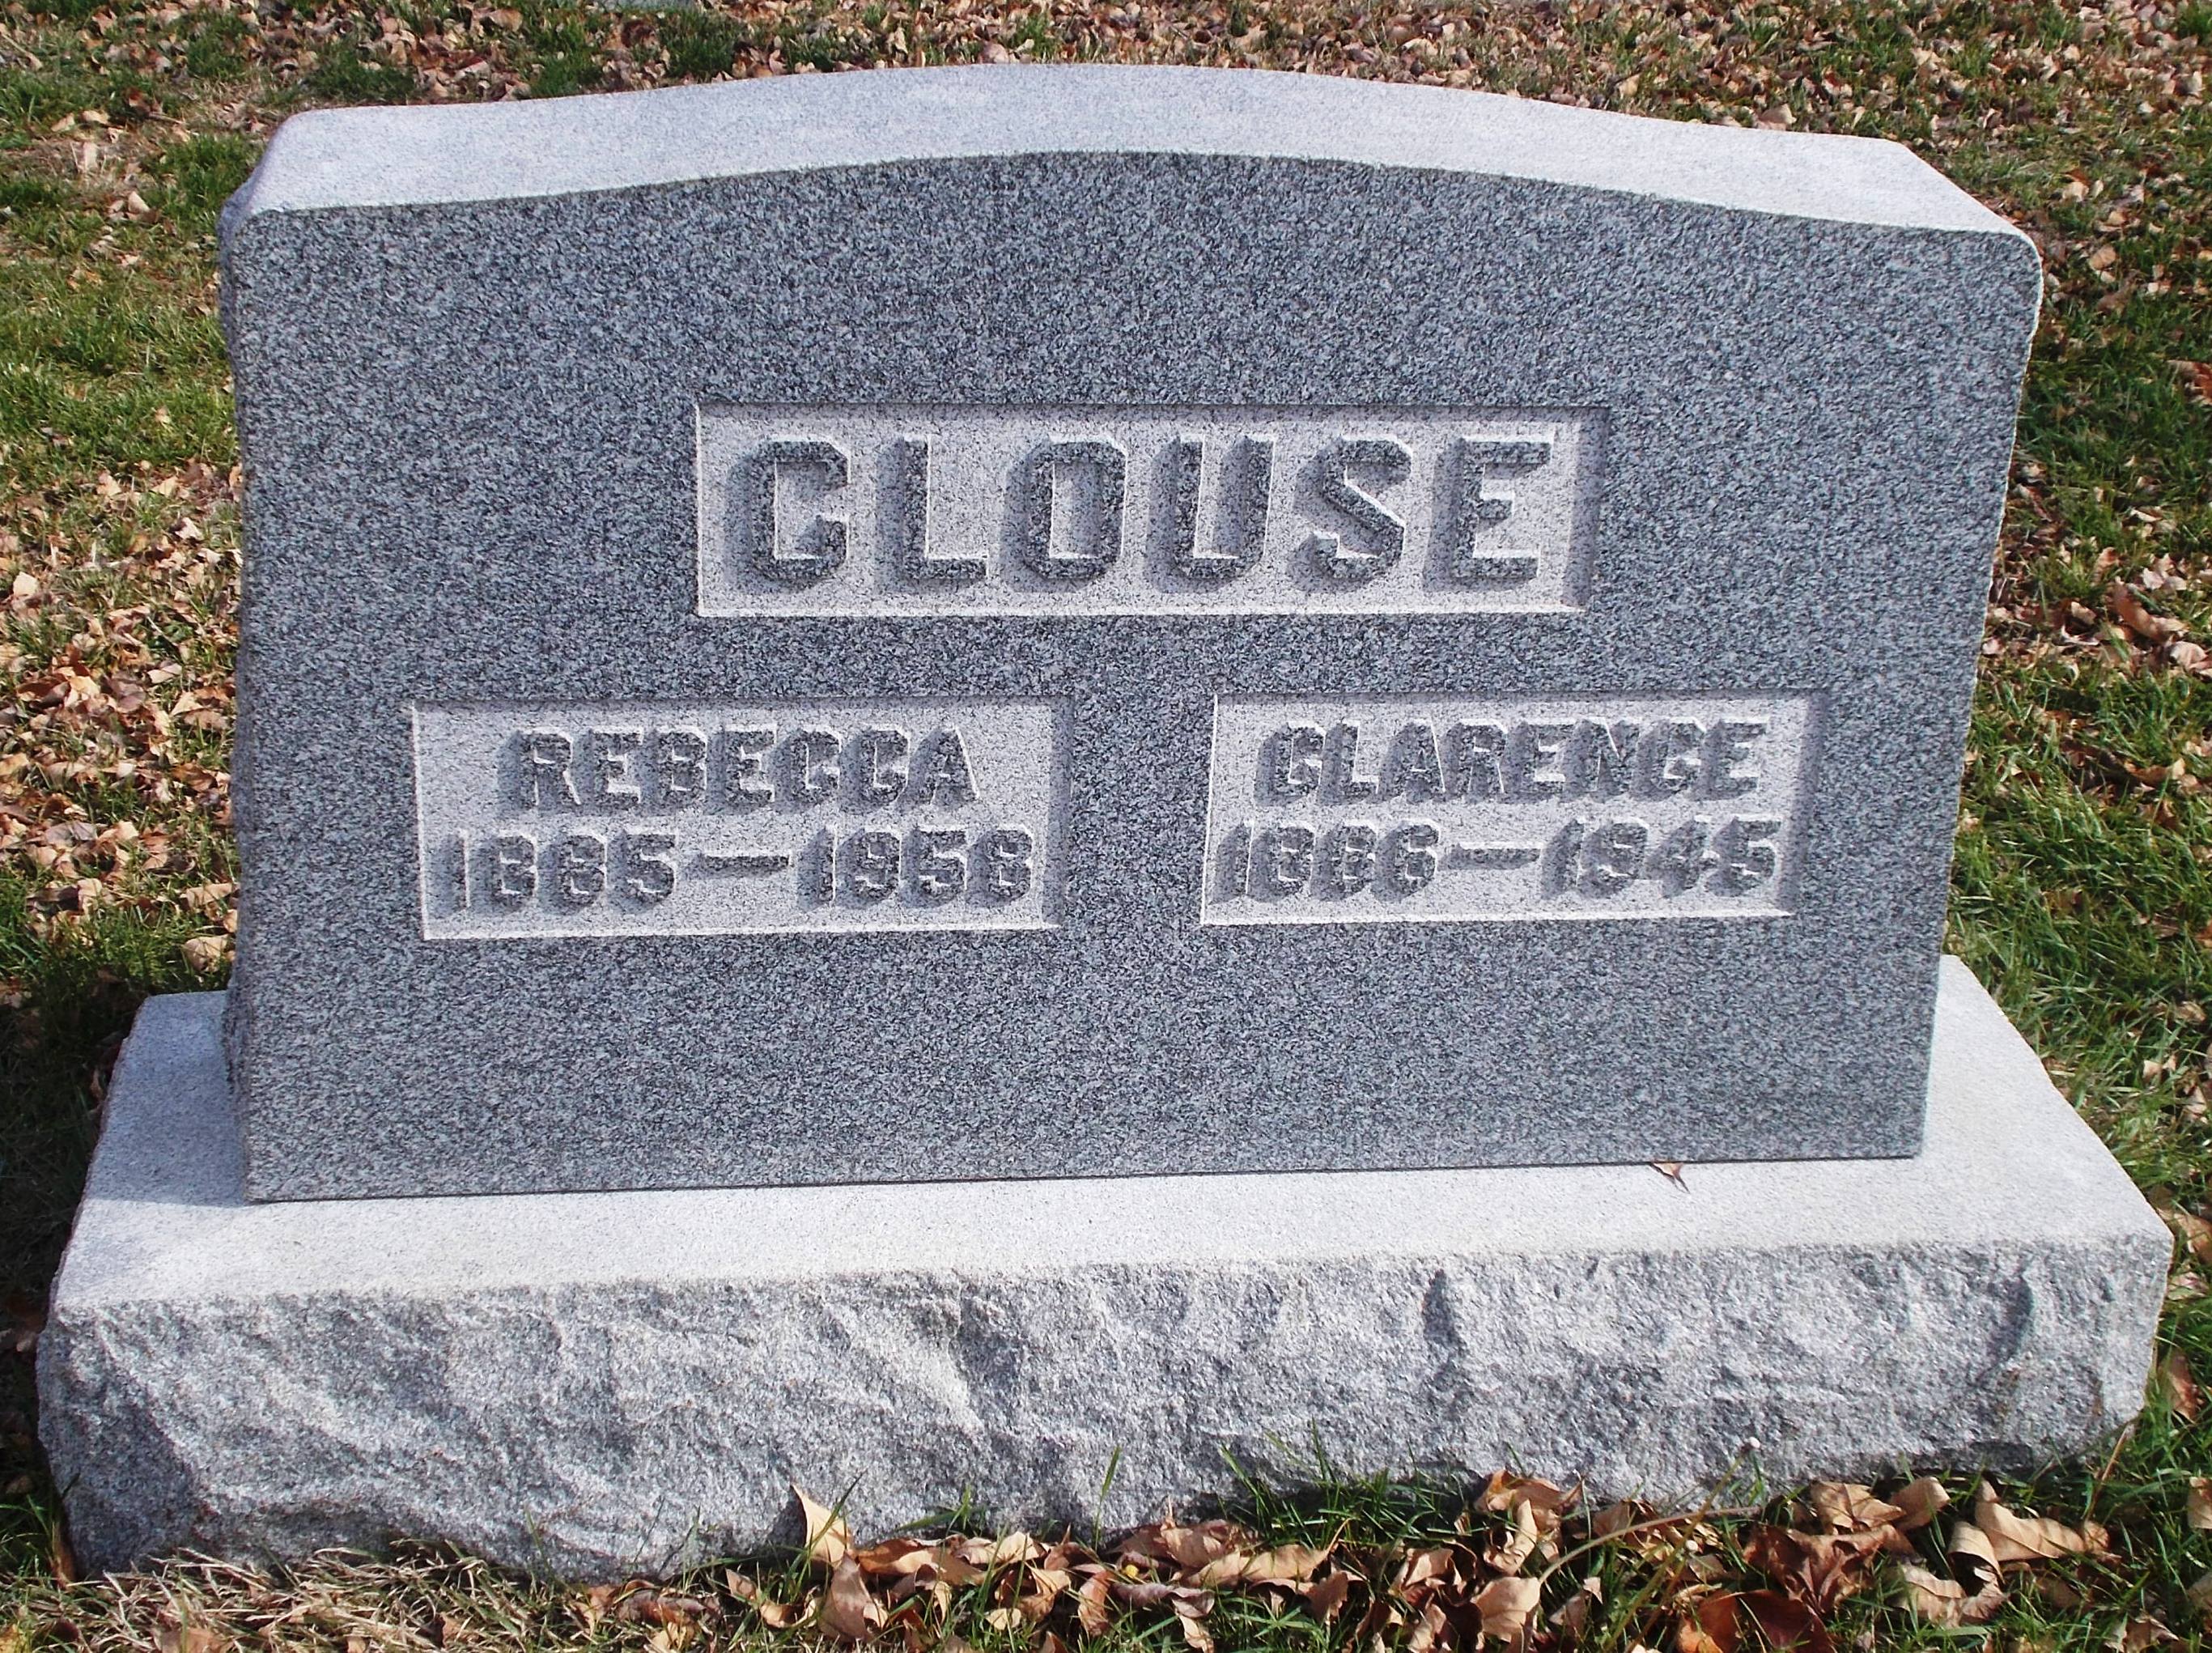 Rebecca Clouse